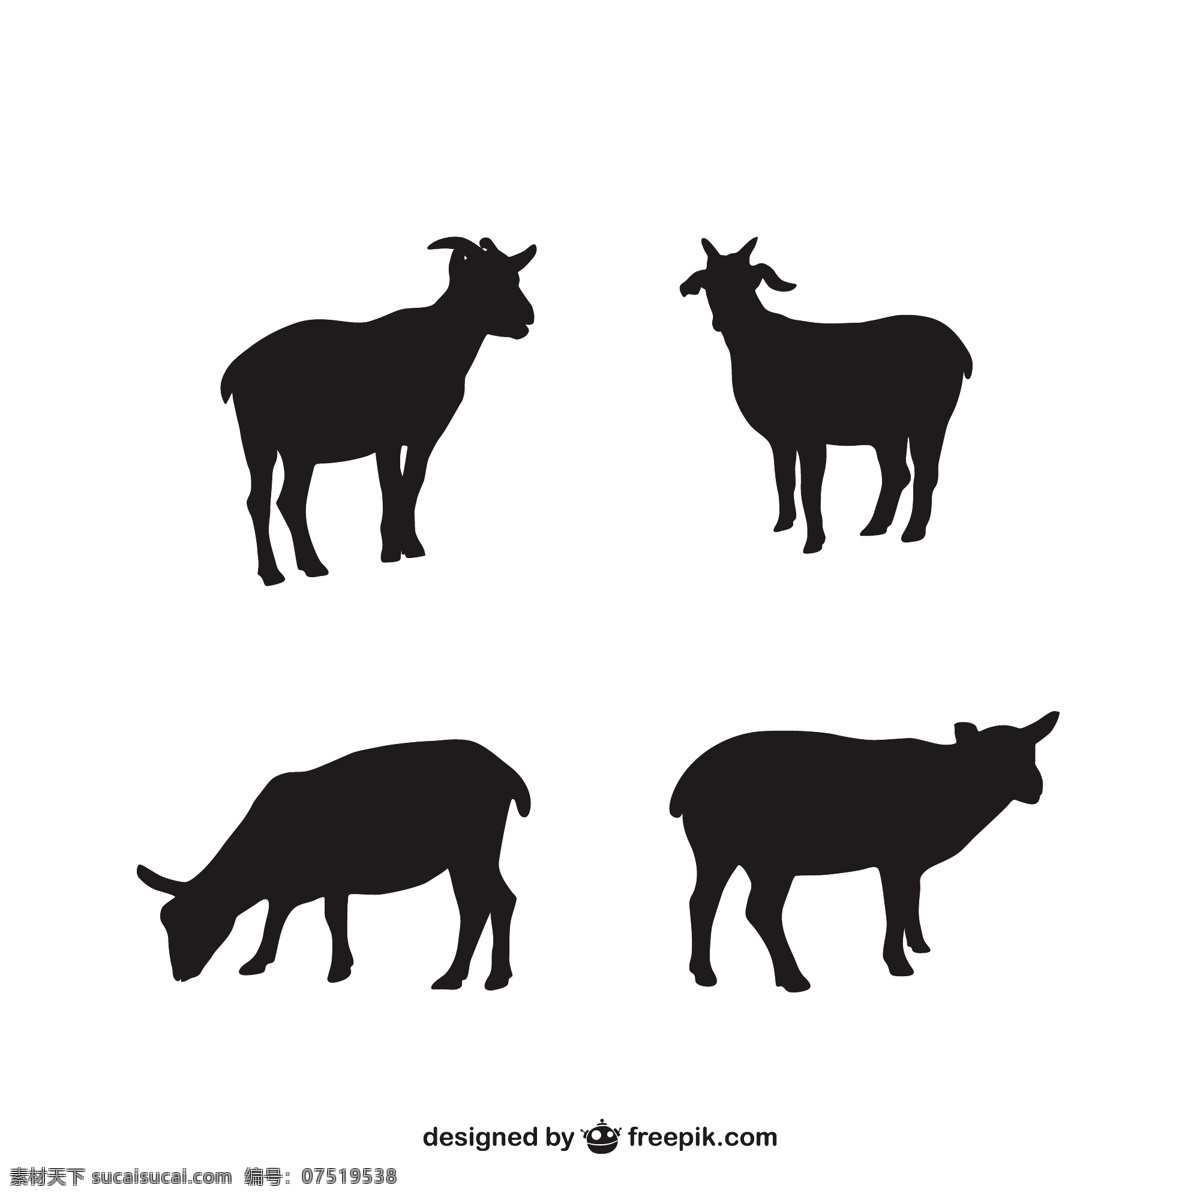 羔羊的剪影 动物农场 动物剪影 羊肉 农场动物 羊羔的轮廓 白色